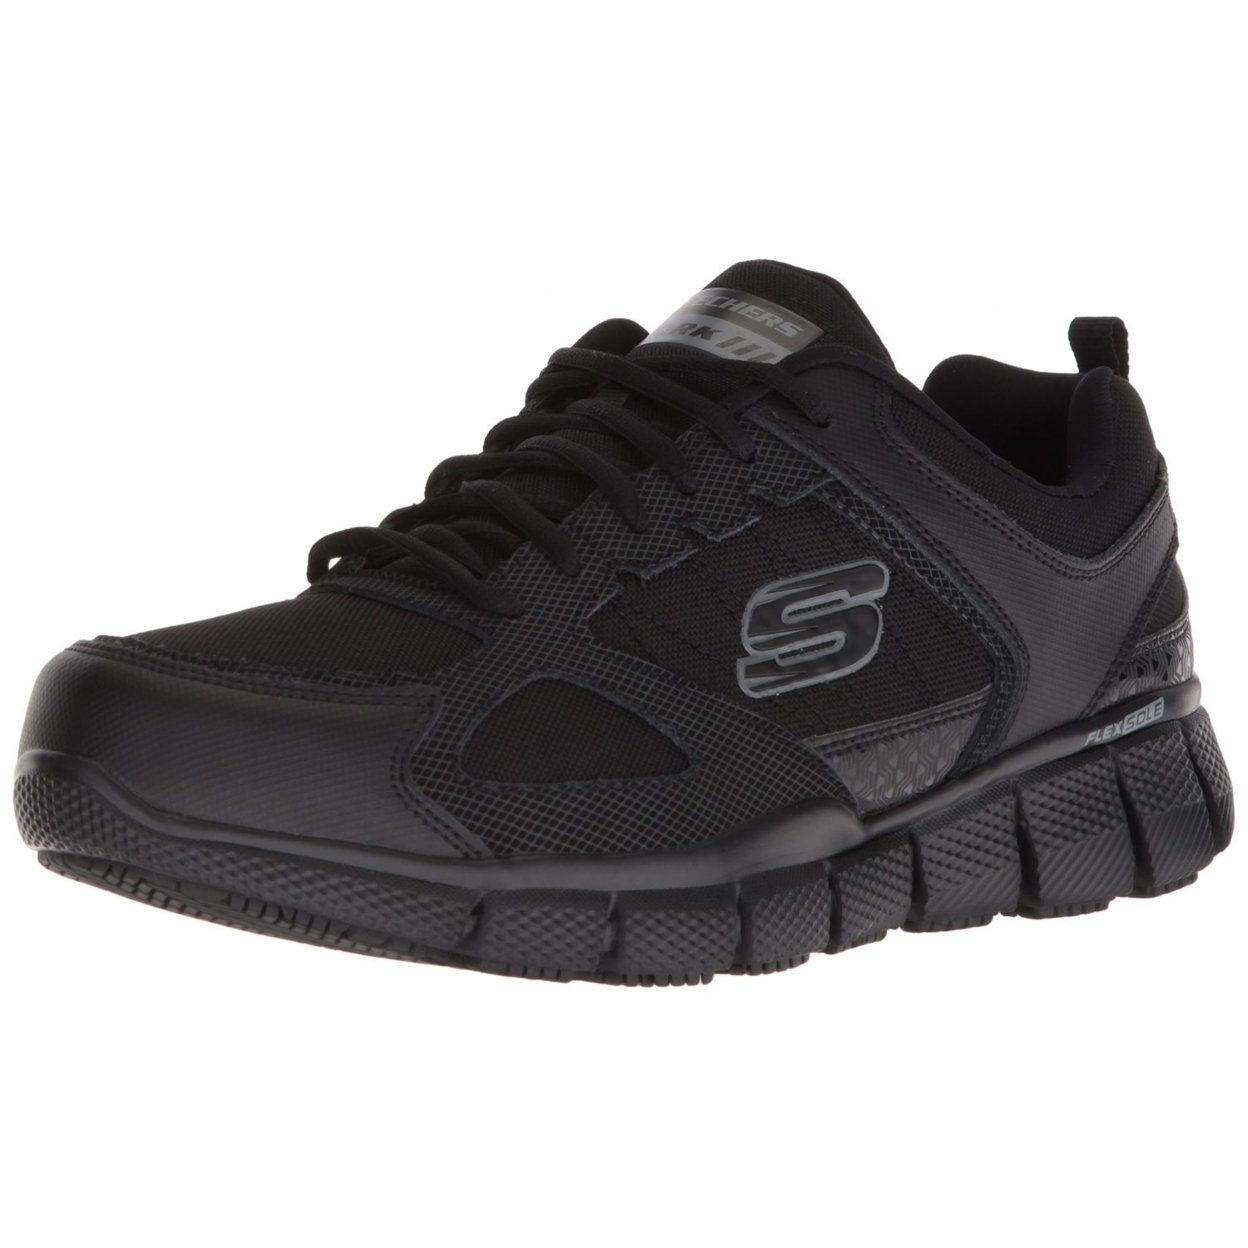 Skechers Men's Telfin-sanphet Industrial Shoe BLACK - BLACK, 11.5 Wide